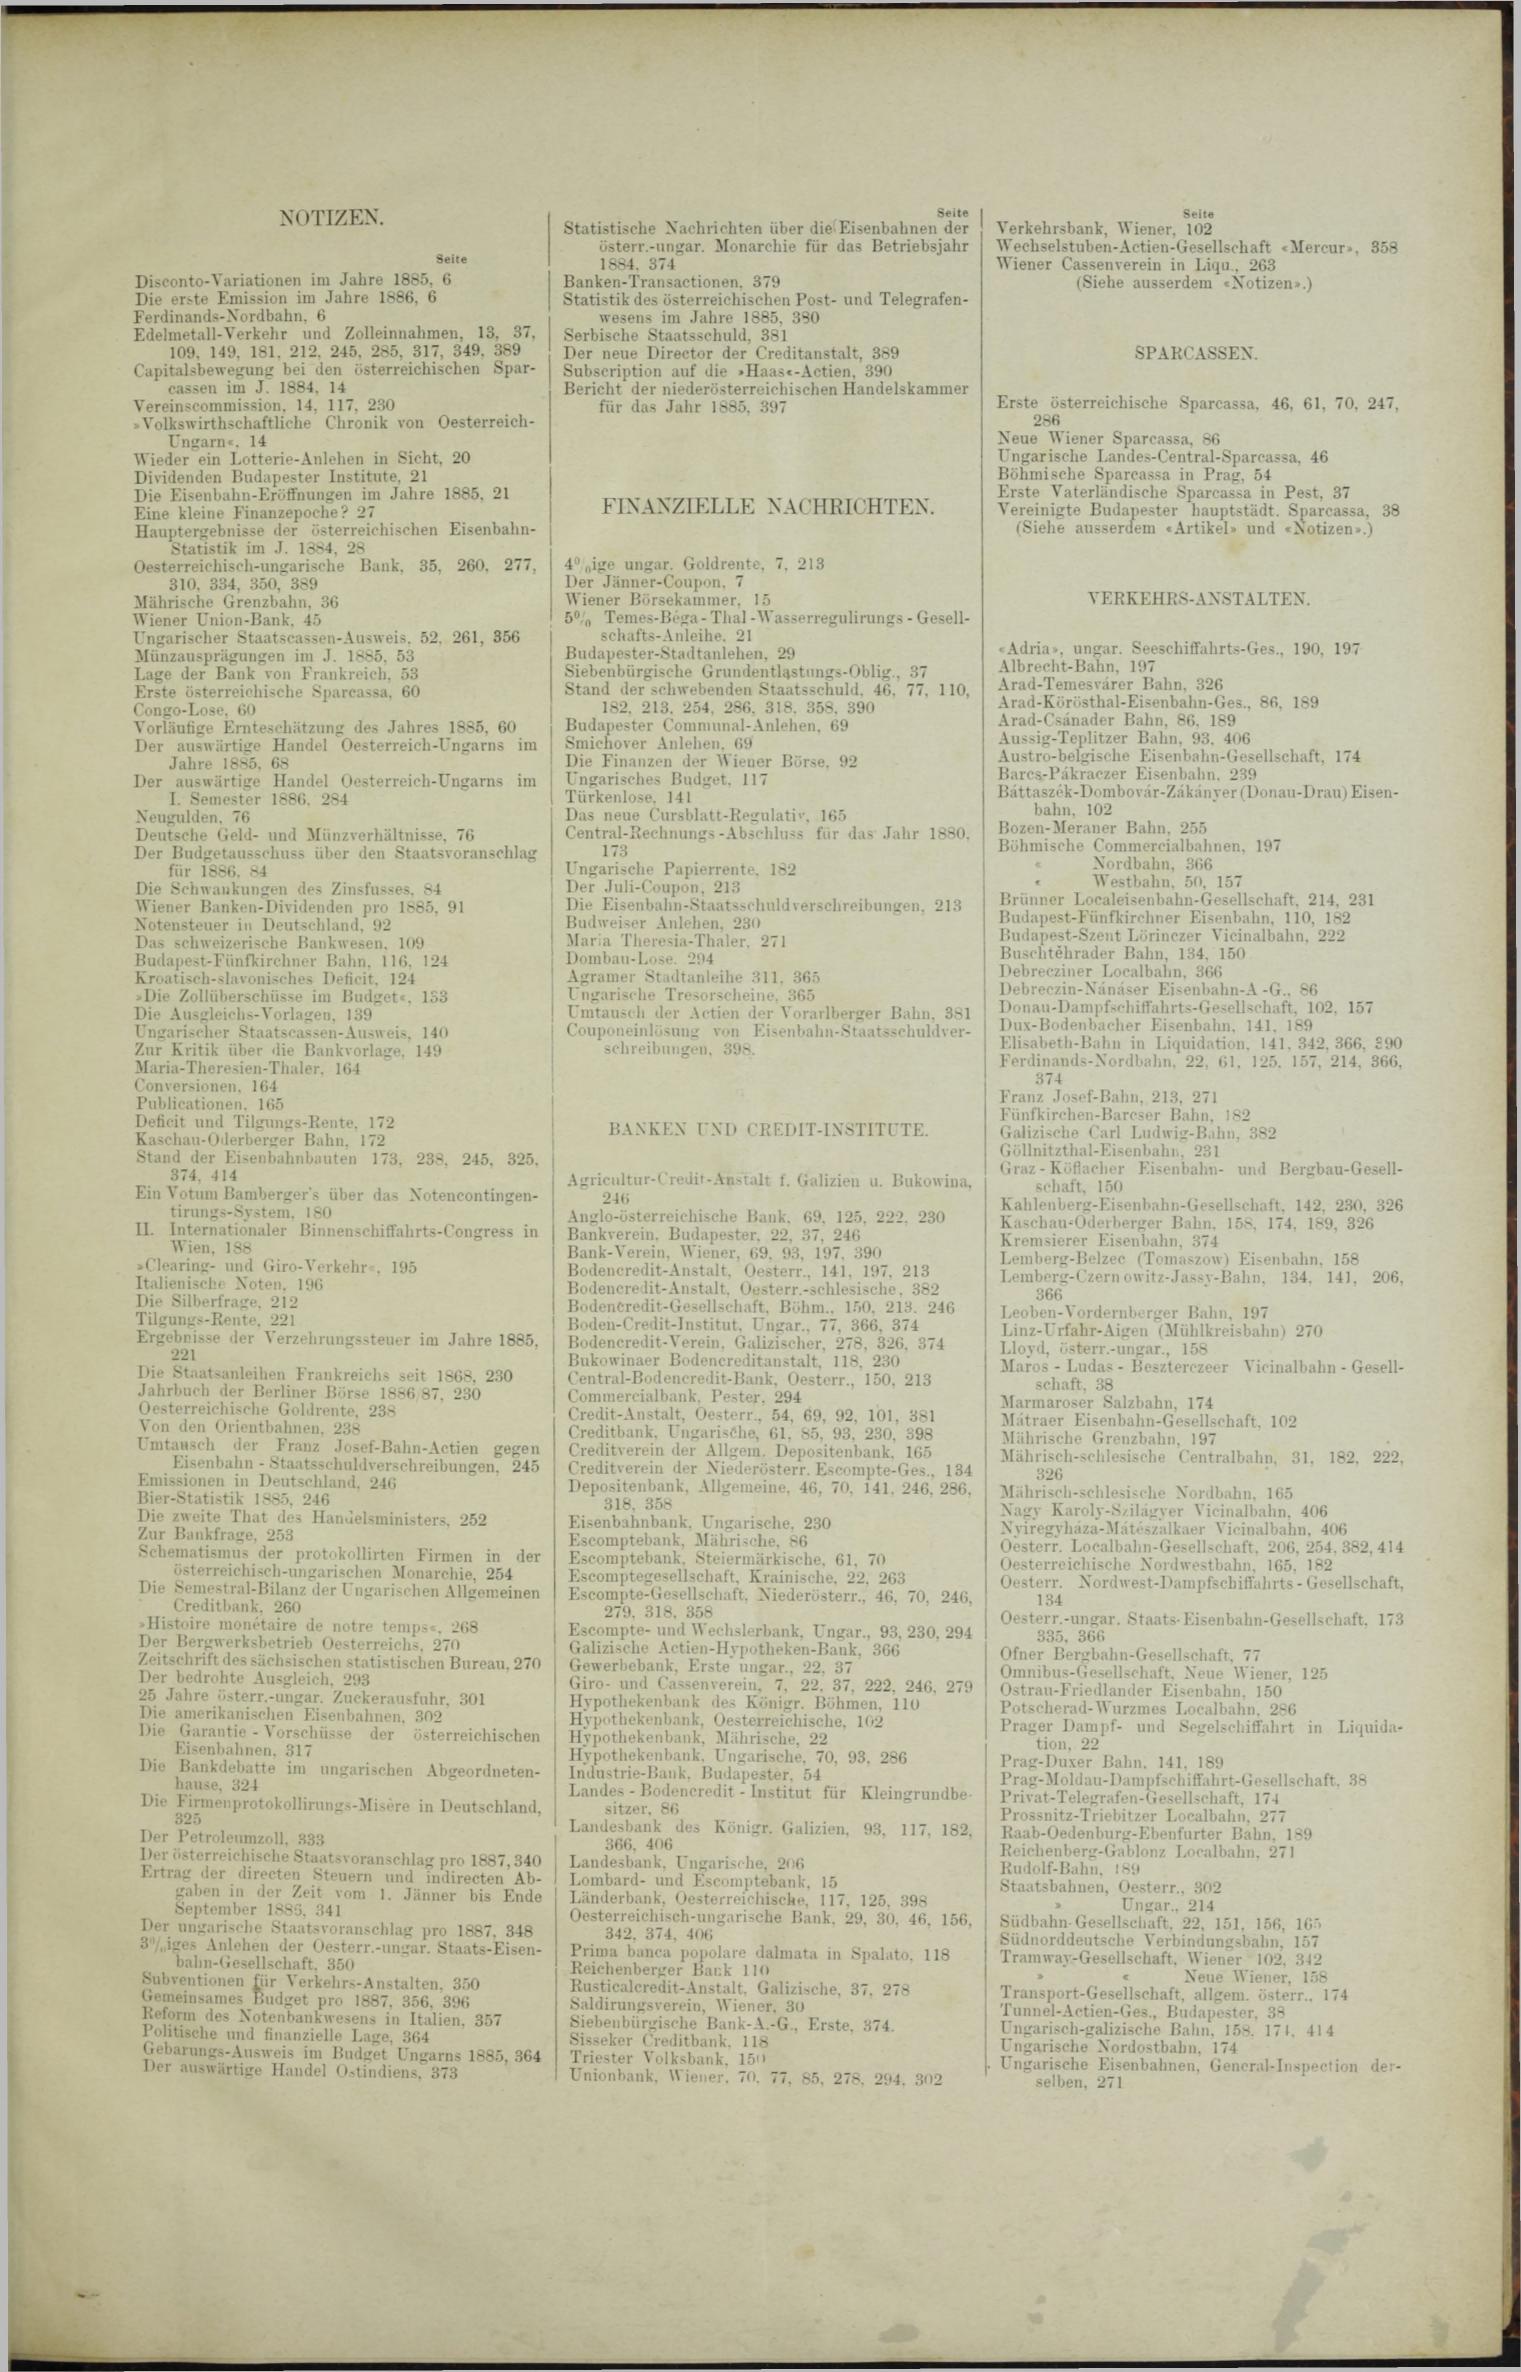 Der Tresor 12.08.1886 - Seite 11